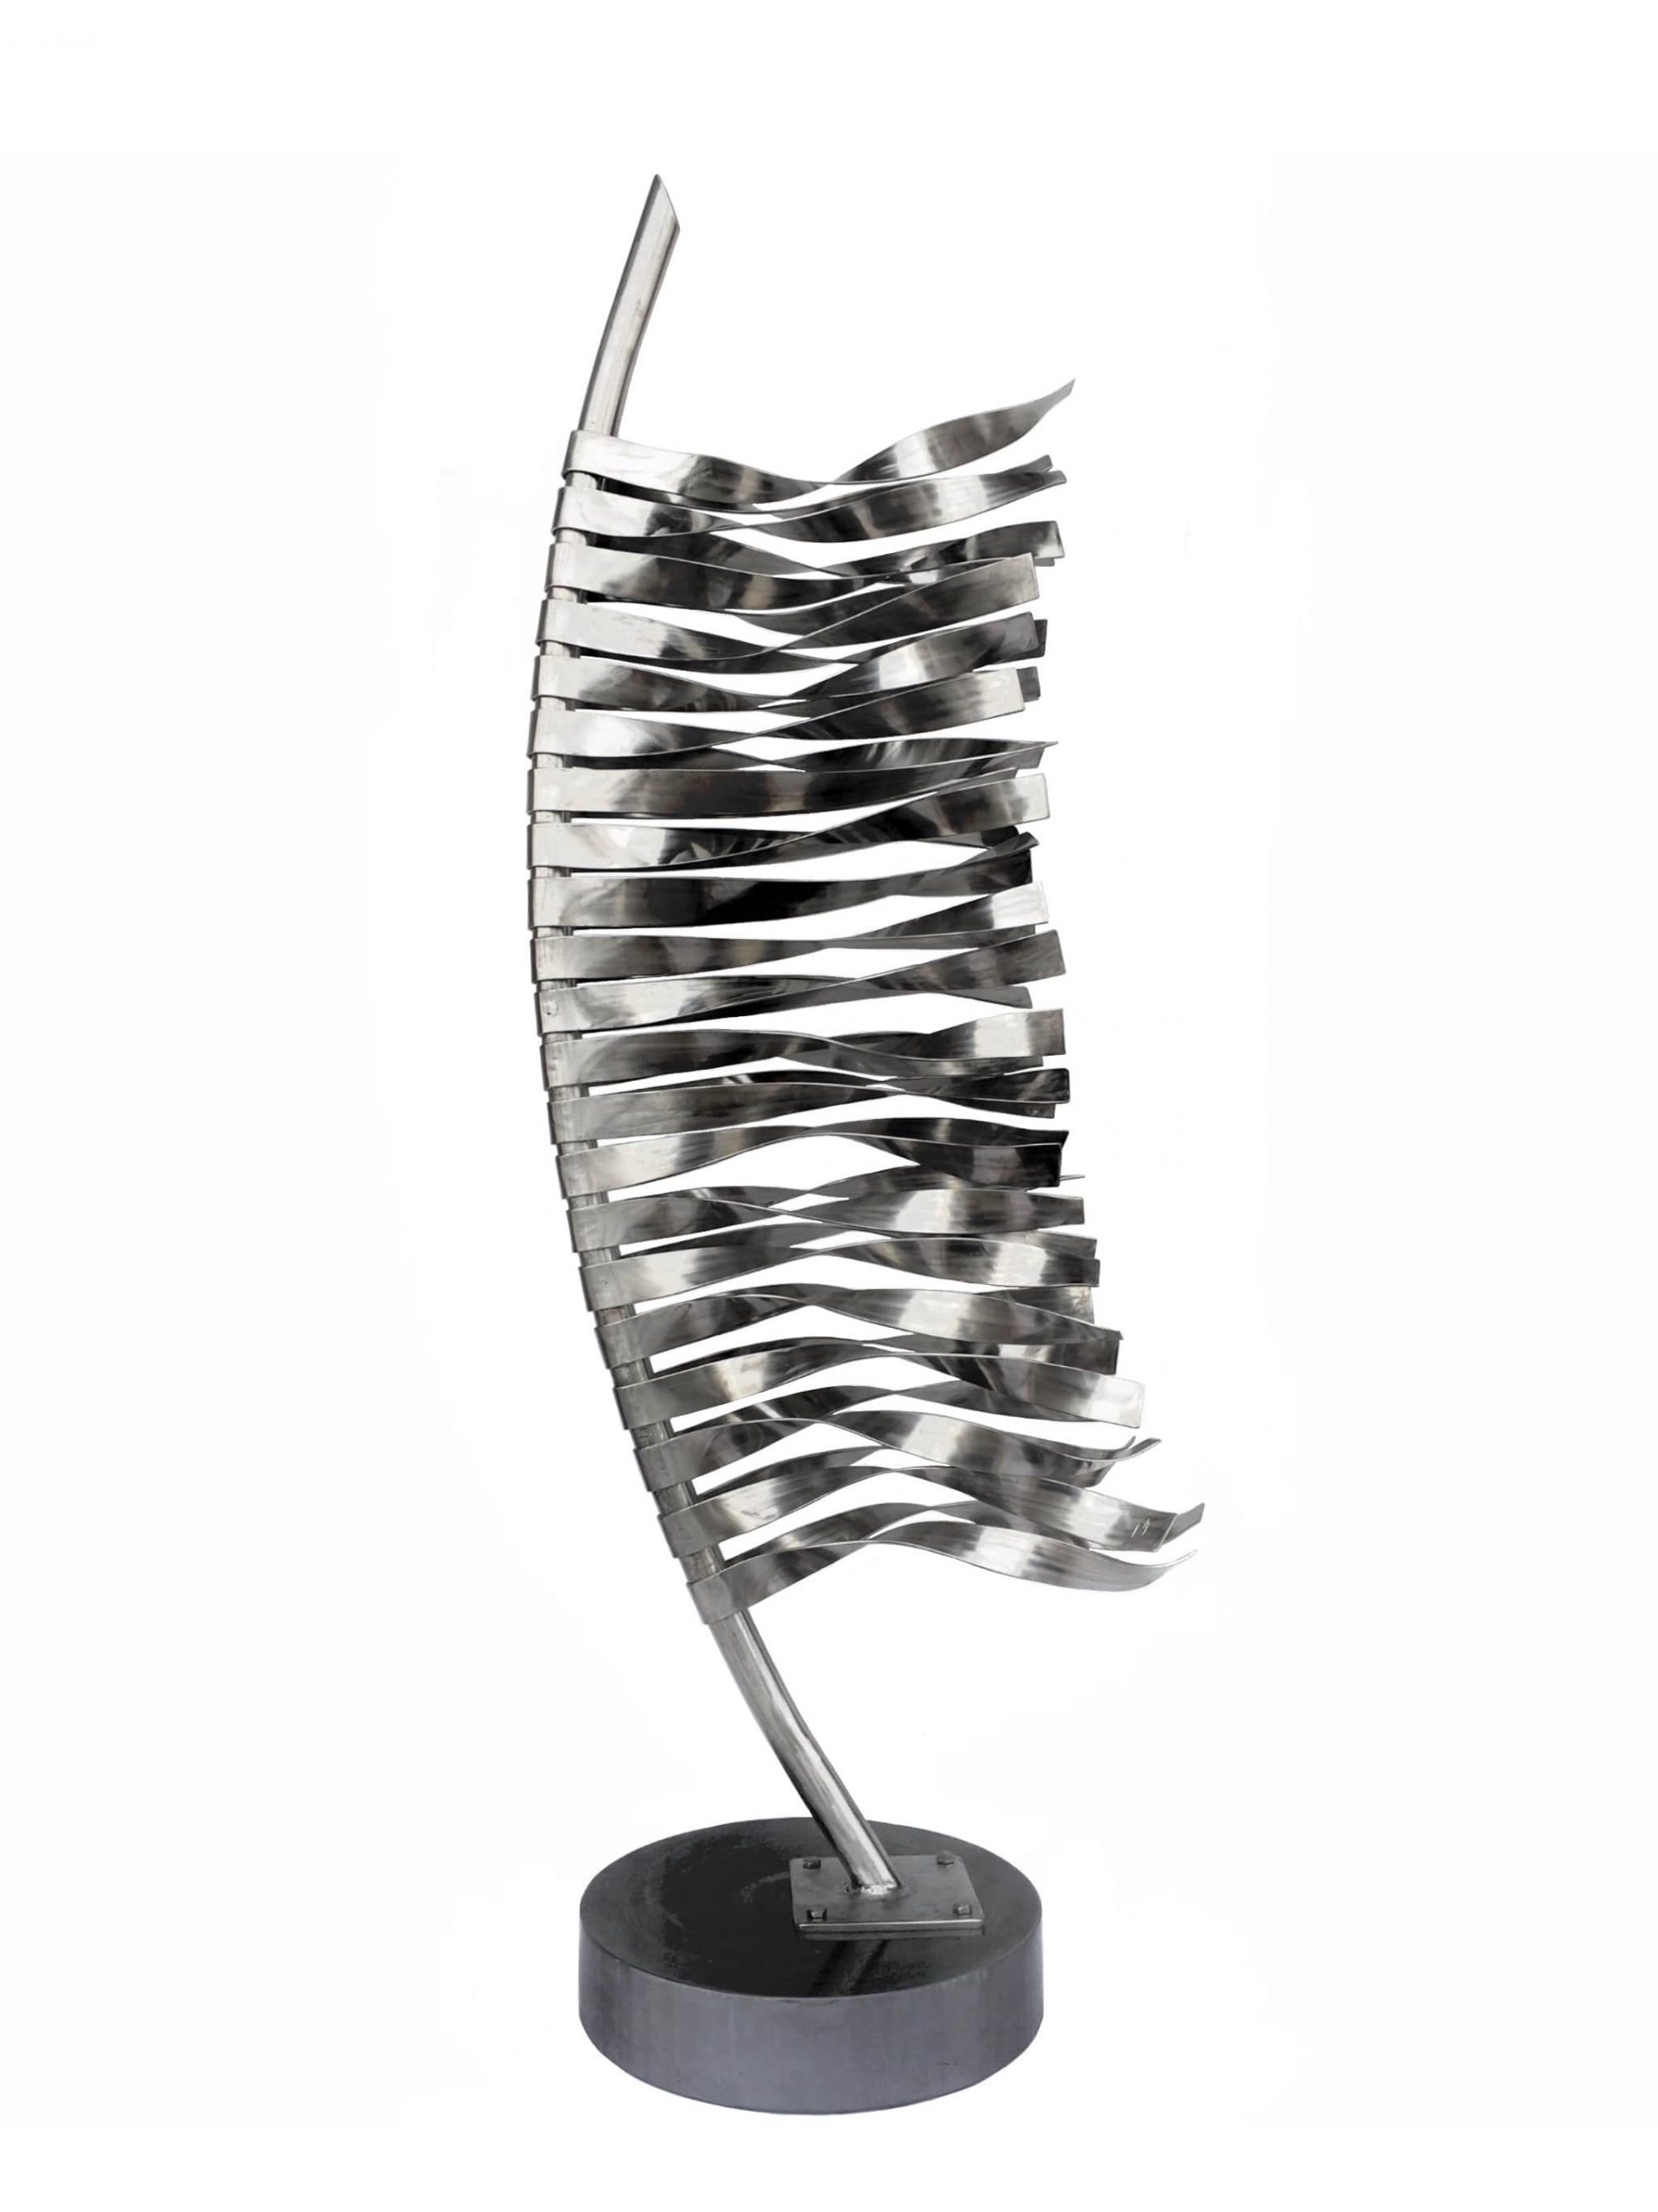 Résistance par Vasil Nikov, une sculpture d'acier inoxydable contemporaine à vendre à la Galerie Blanche de Montréal